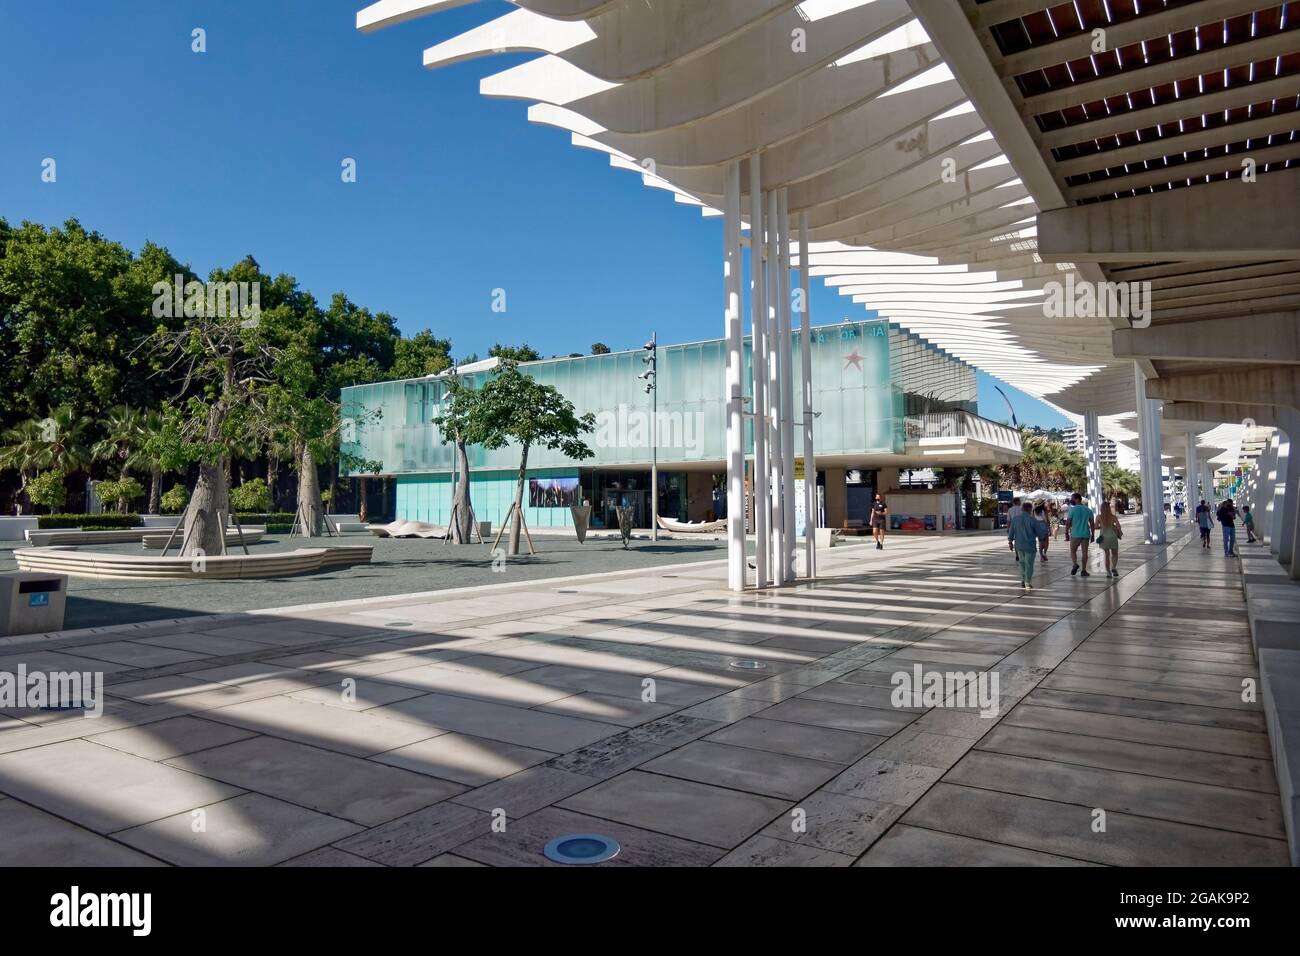 Museo Alborania Museum, El Palmeral de las Sorpresas, Promenade, Hafen, Malaga, Costa del Sol, Provinz Malaga, Andalusien, Spanien, Europa, Stock Photo